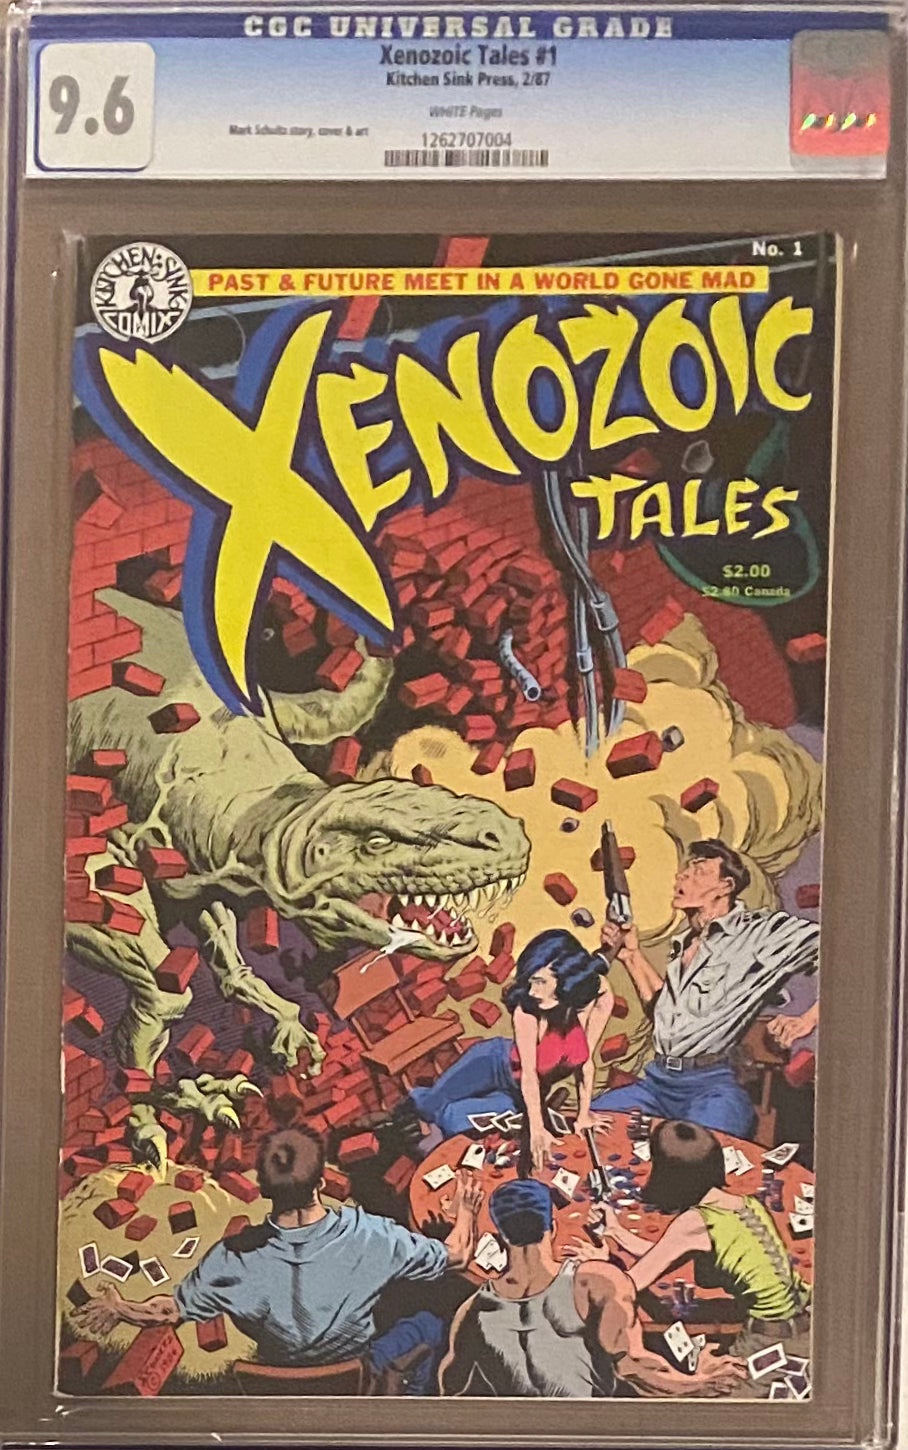 Xenozoic Tales #1 CGC 9.6